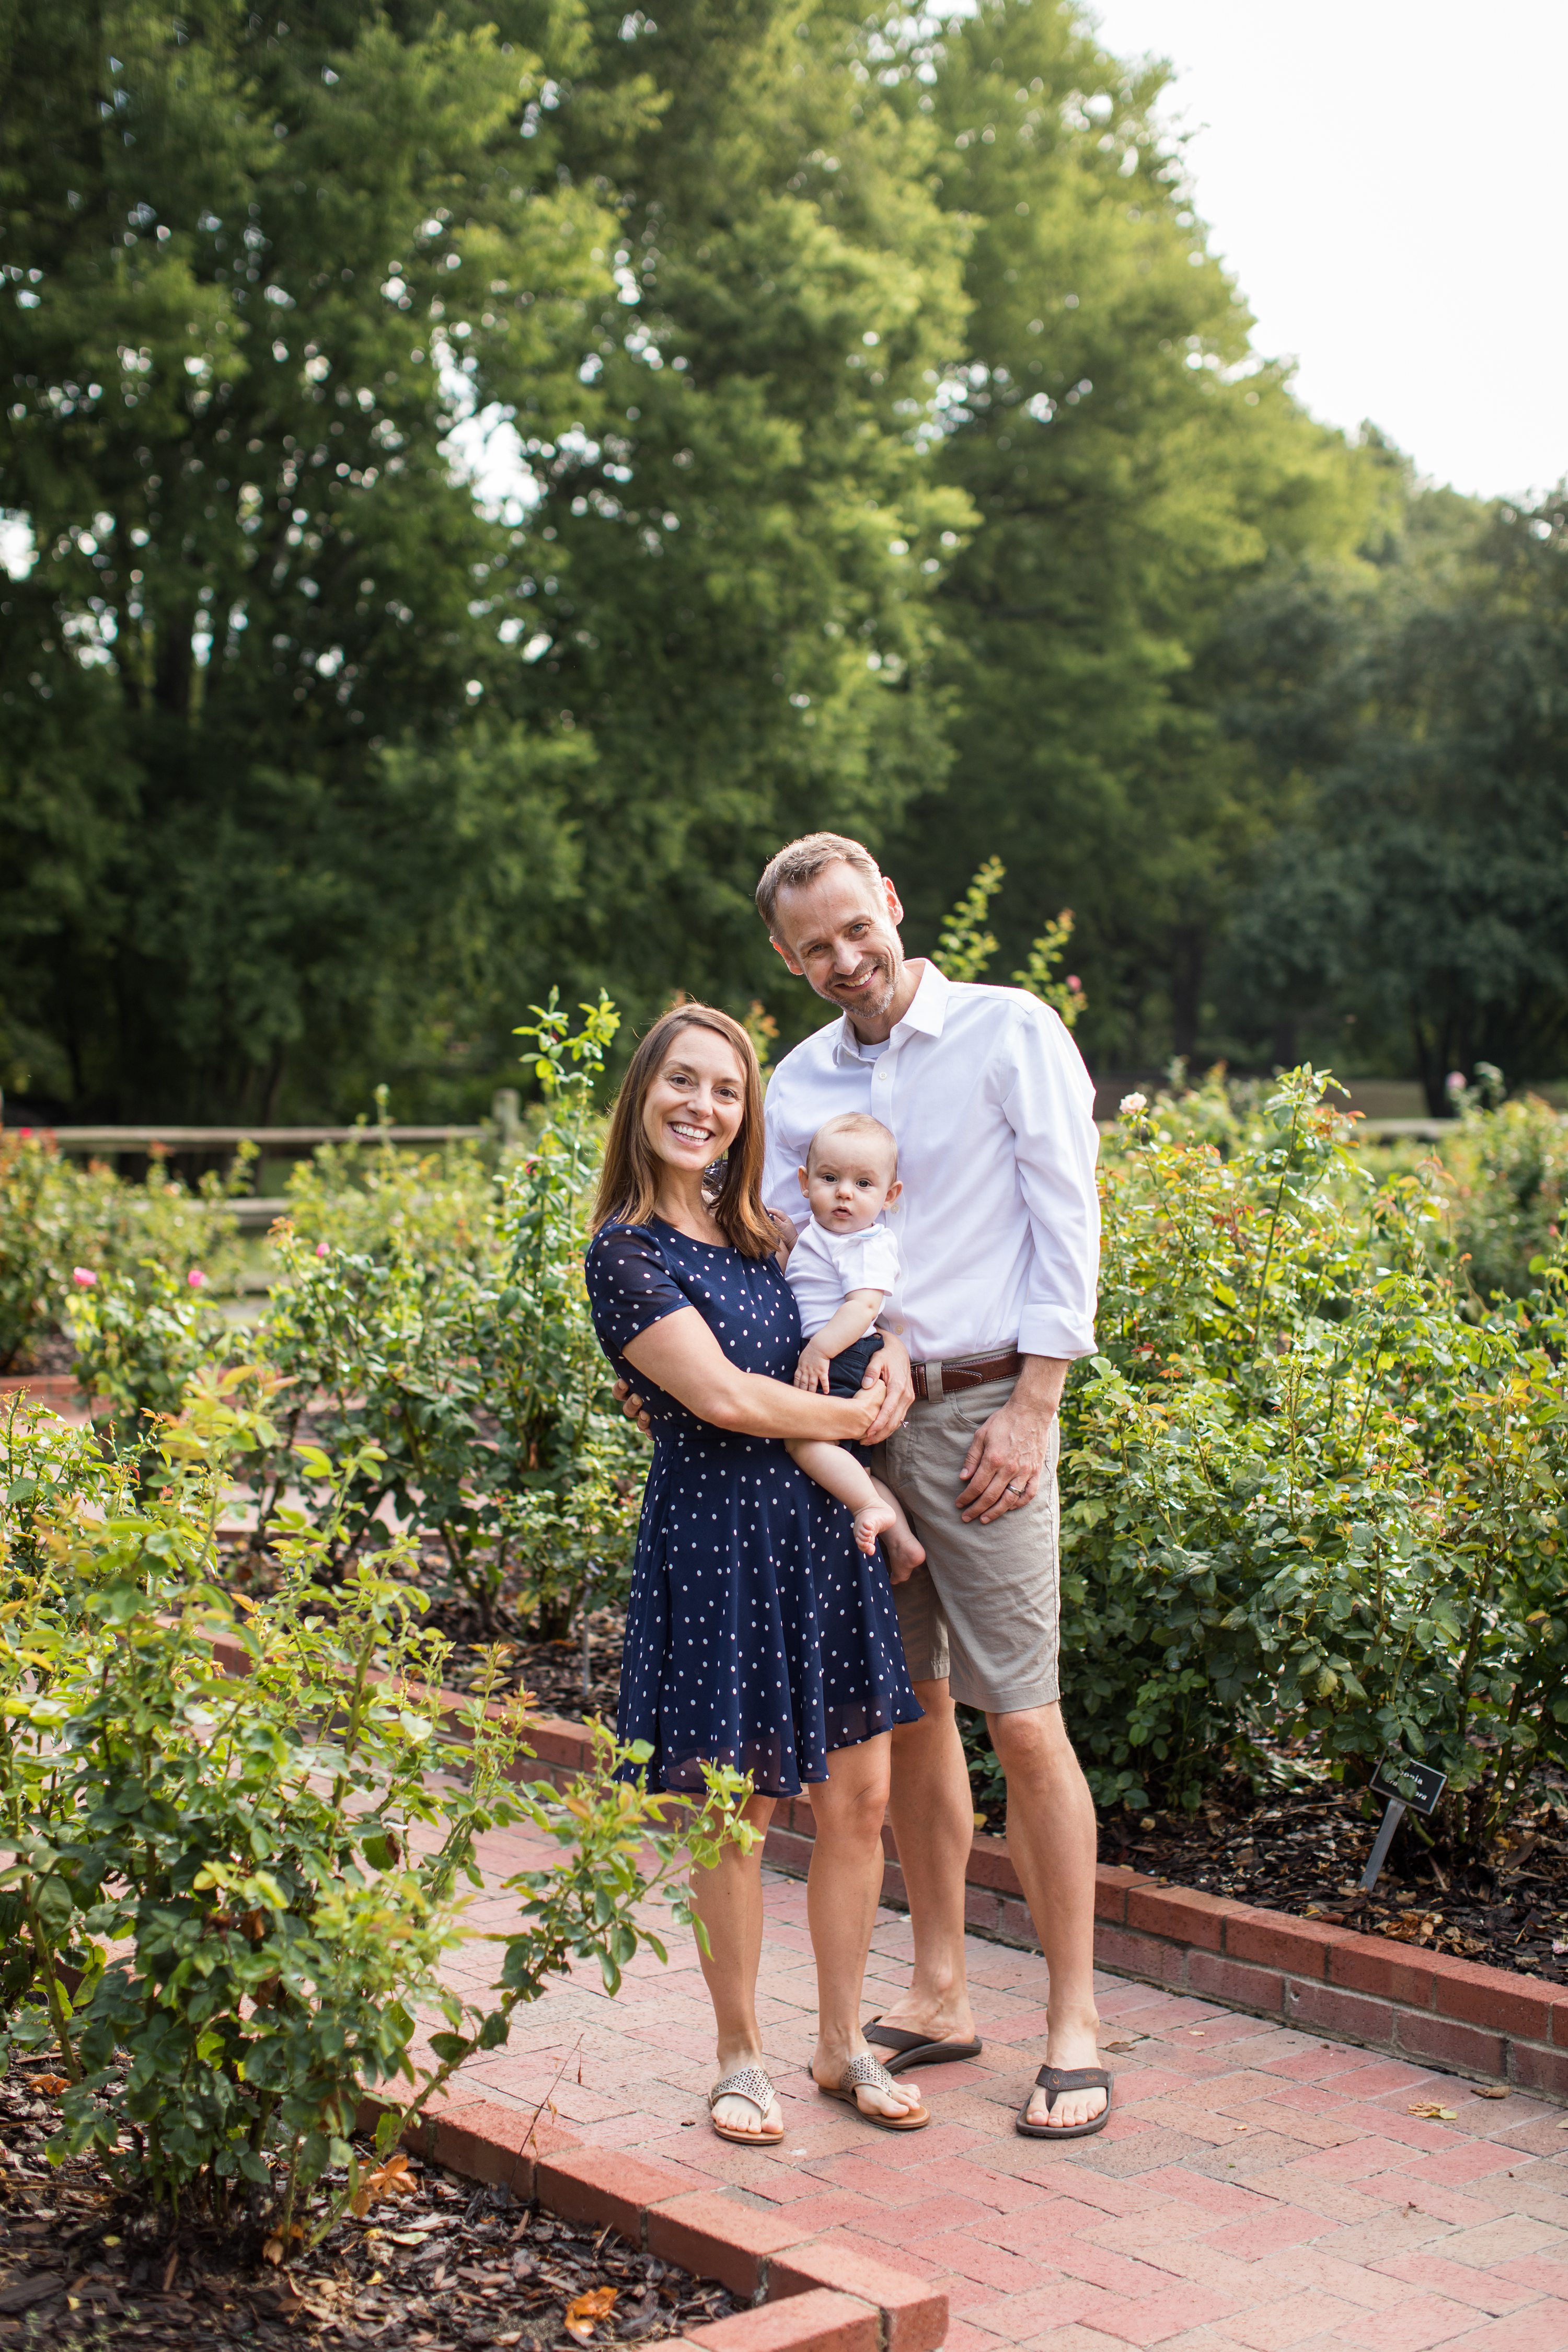 baby photos in garden,Baby Photos,gene stroud rose garden park,Chapel Hill